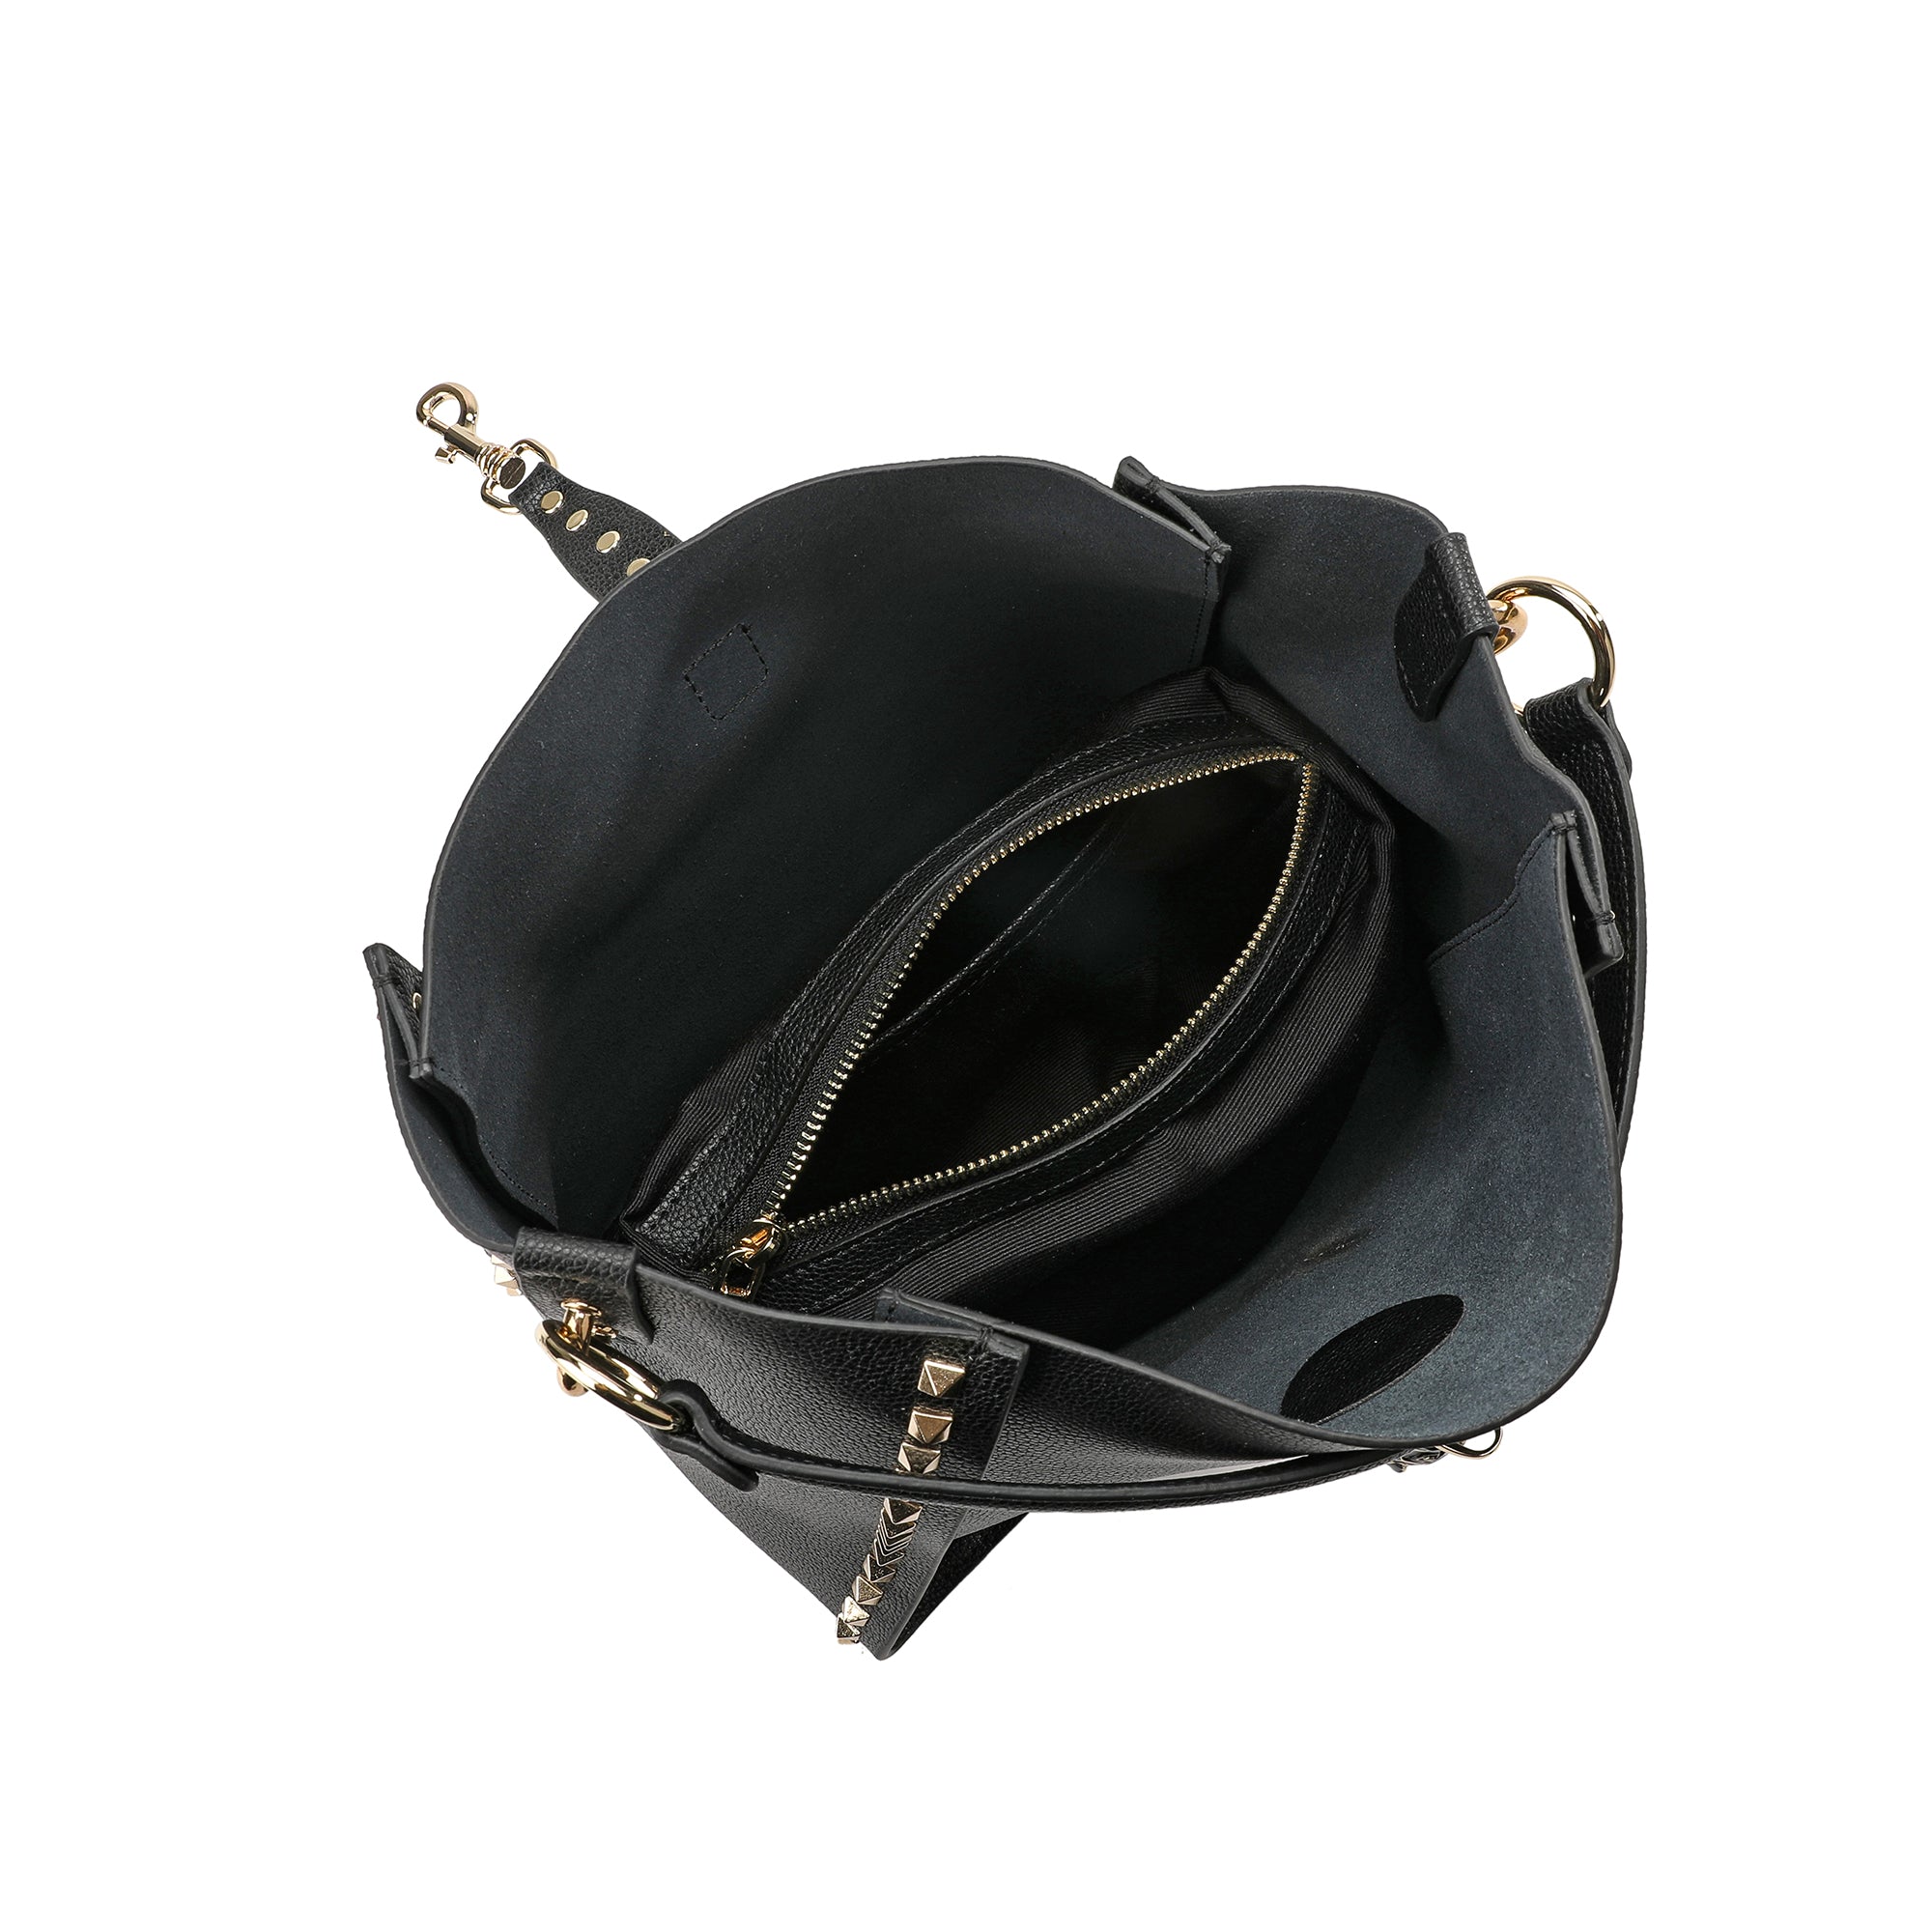 New Vintage Black Nine West Shoulder Bag With Long Straps | eBay